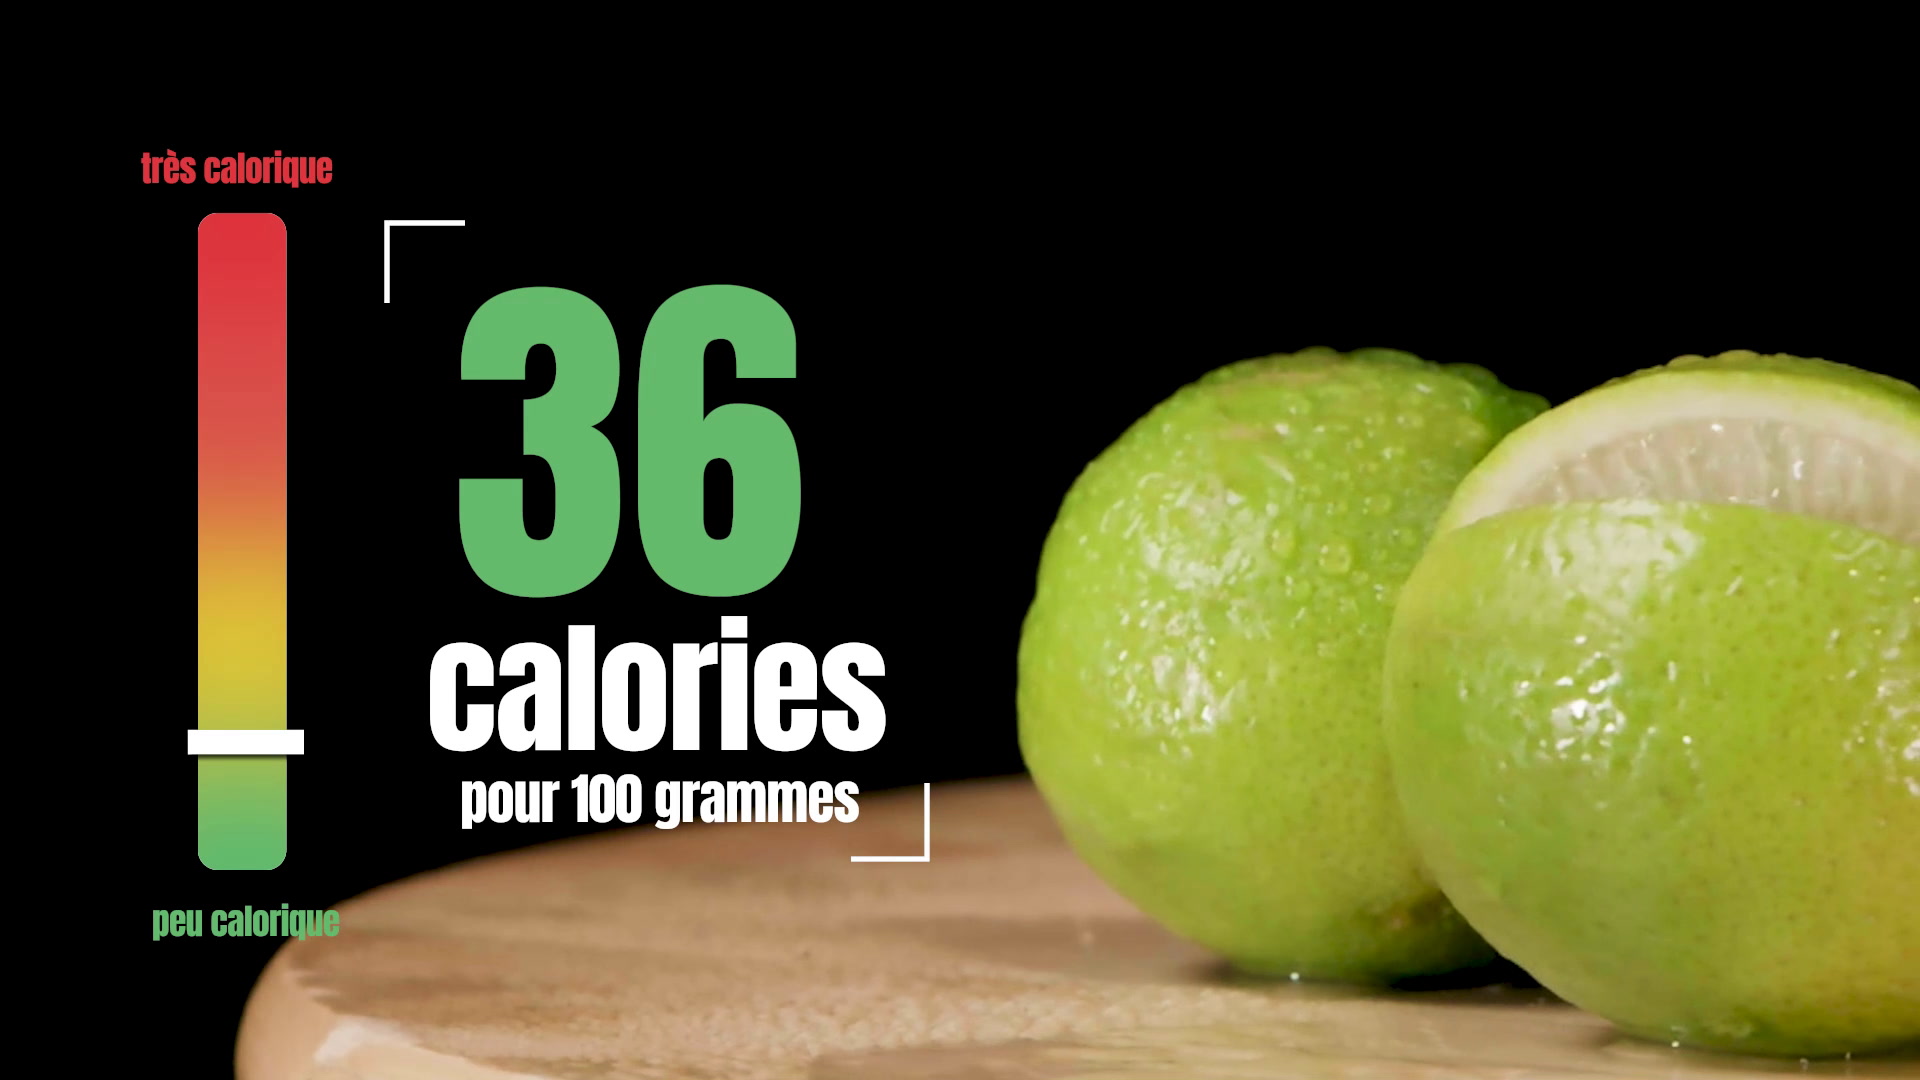 Calories citron vert : 36 calories pour